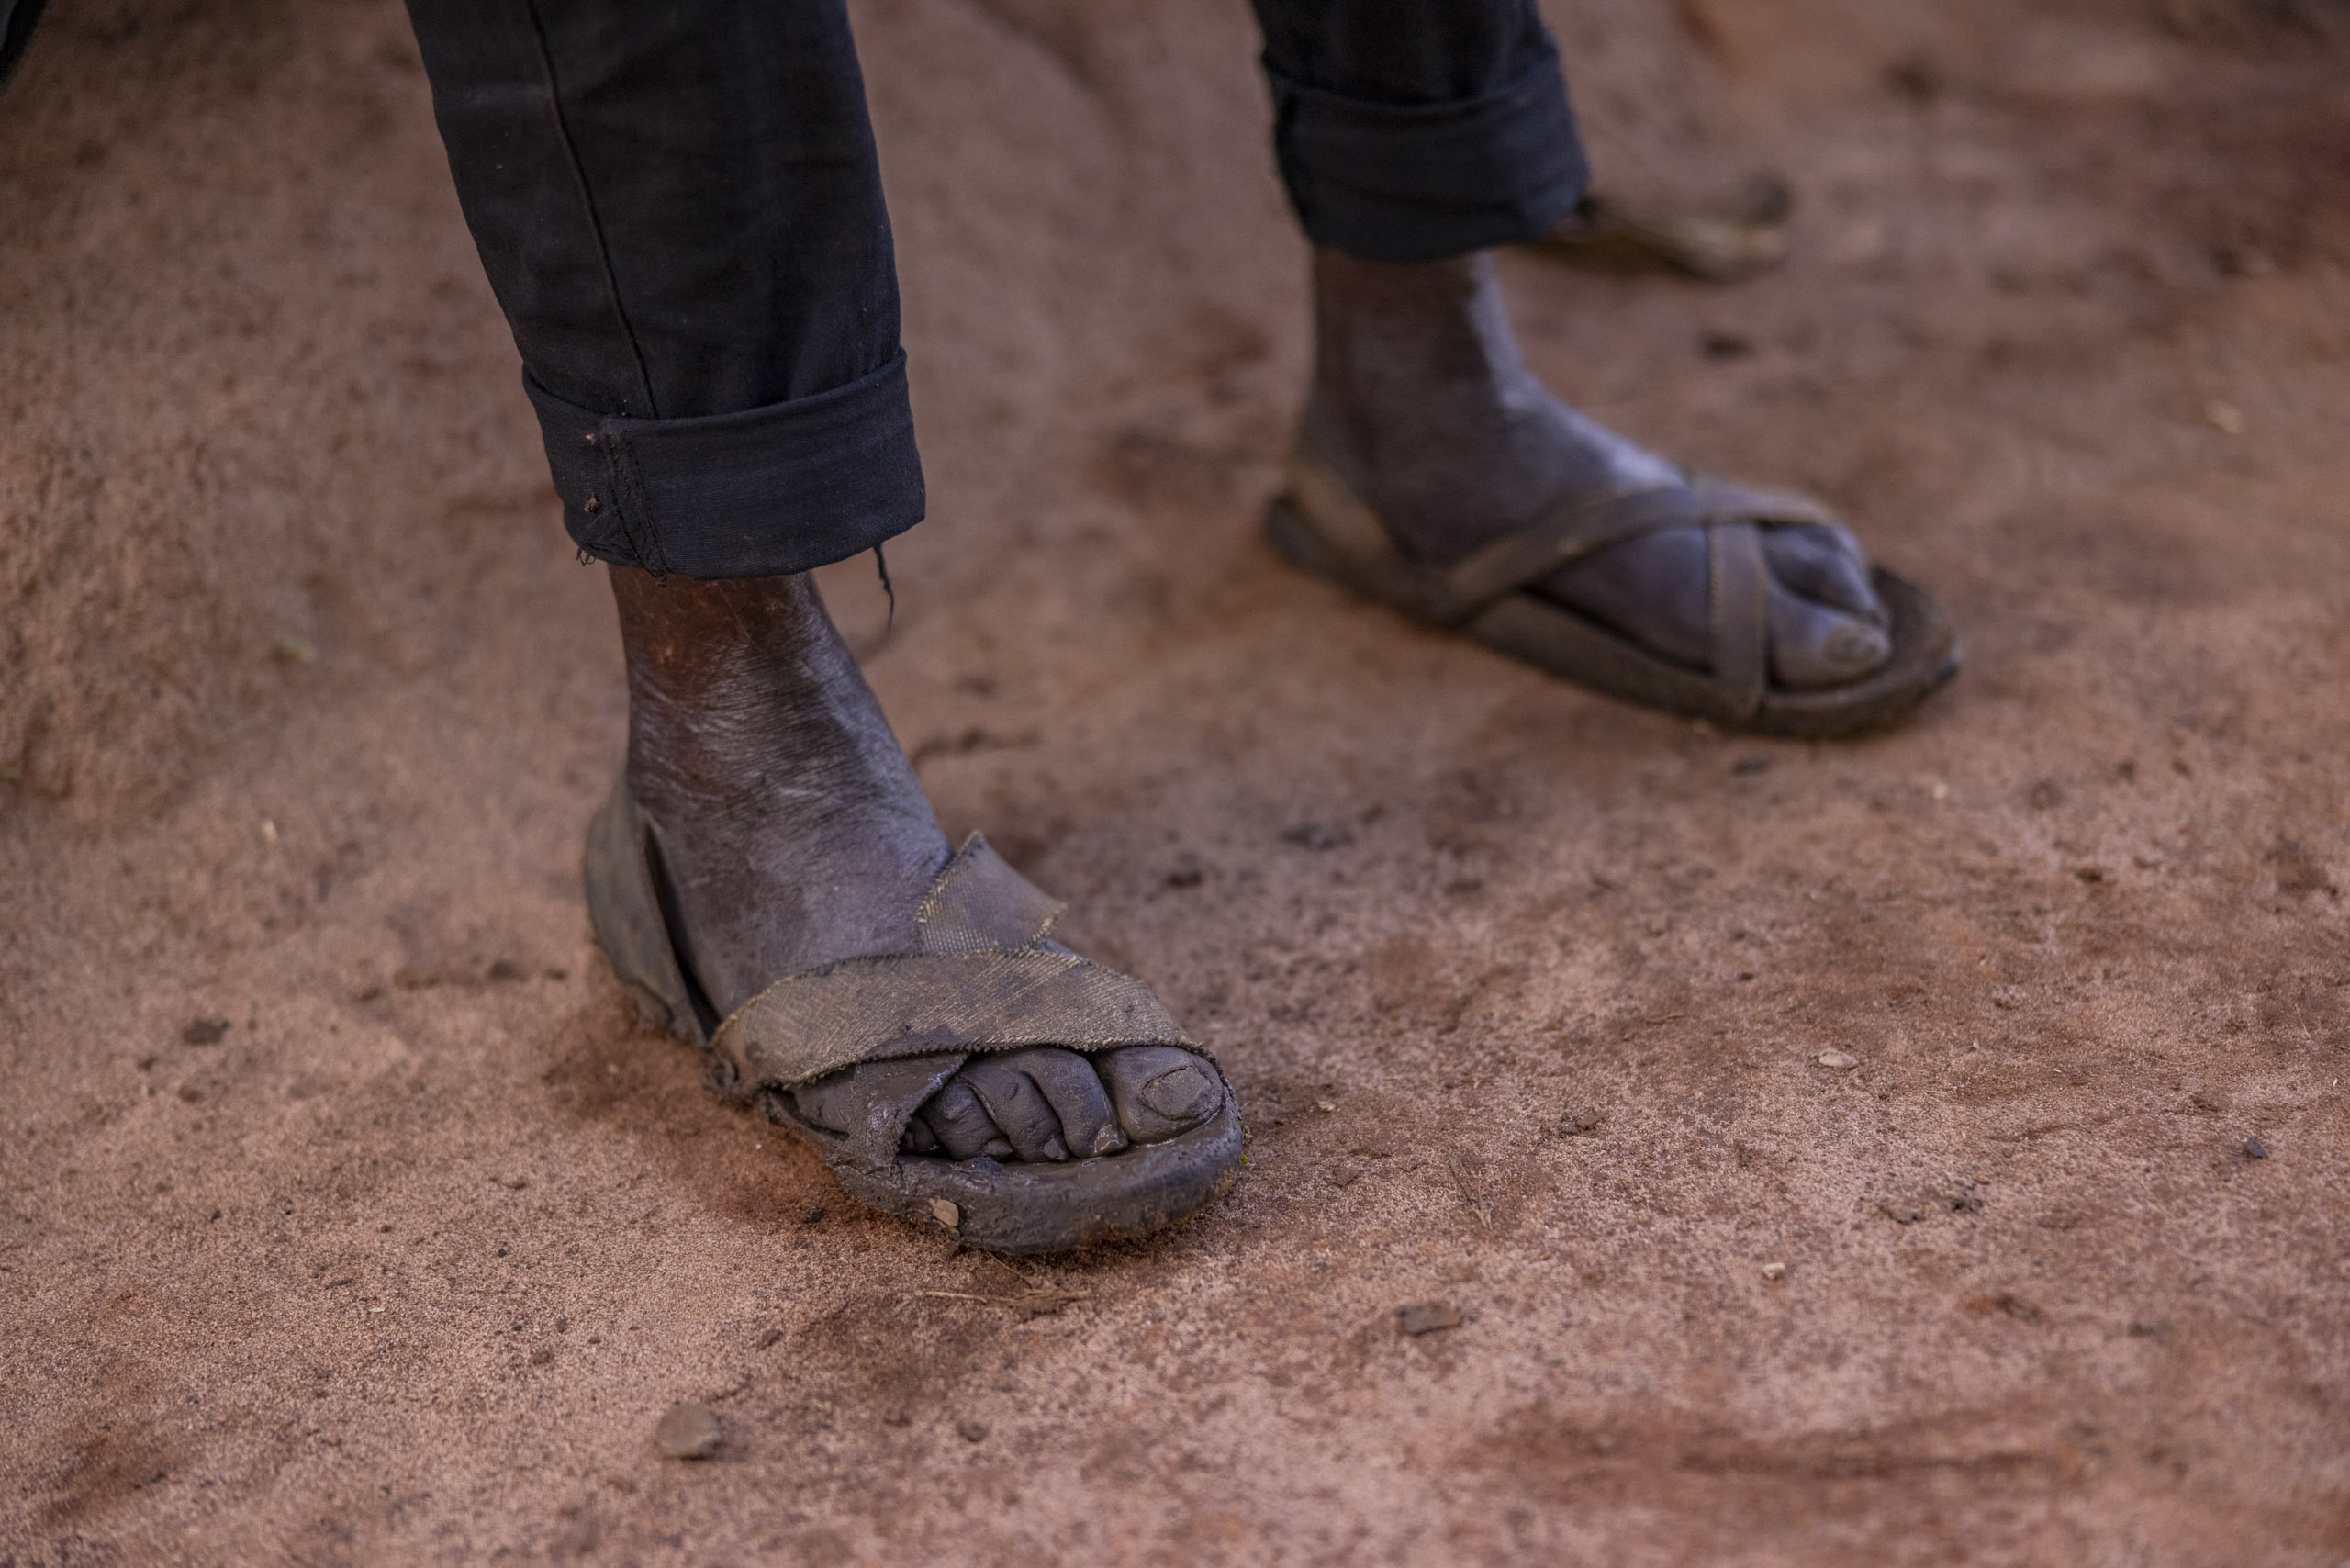 Nahaufnahme der Füße einer Person in abgenutzten Sandalen auf schmutzigem Boden, was Armut und harte Lebensbedingungen verdeutlicht. © Fotografie Tomas Rodriguez